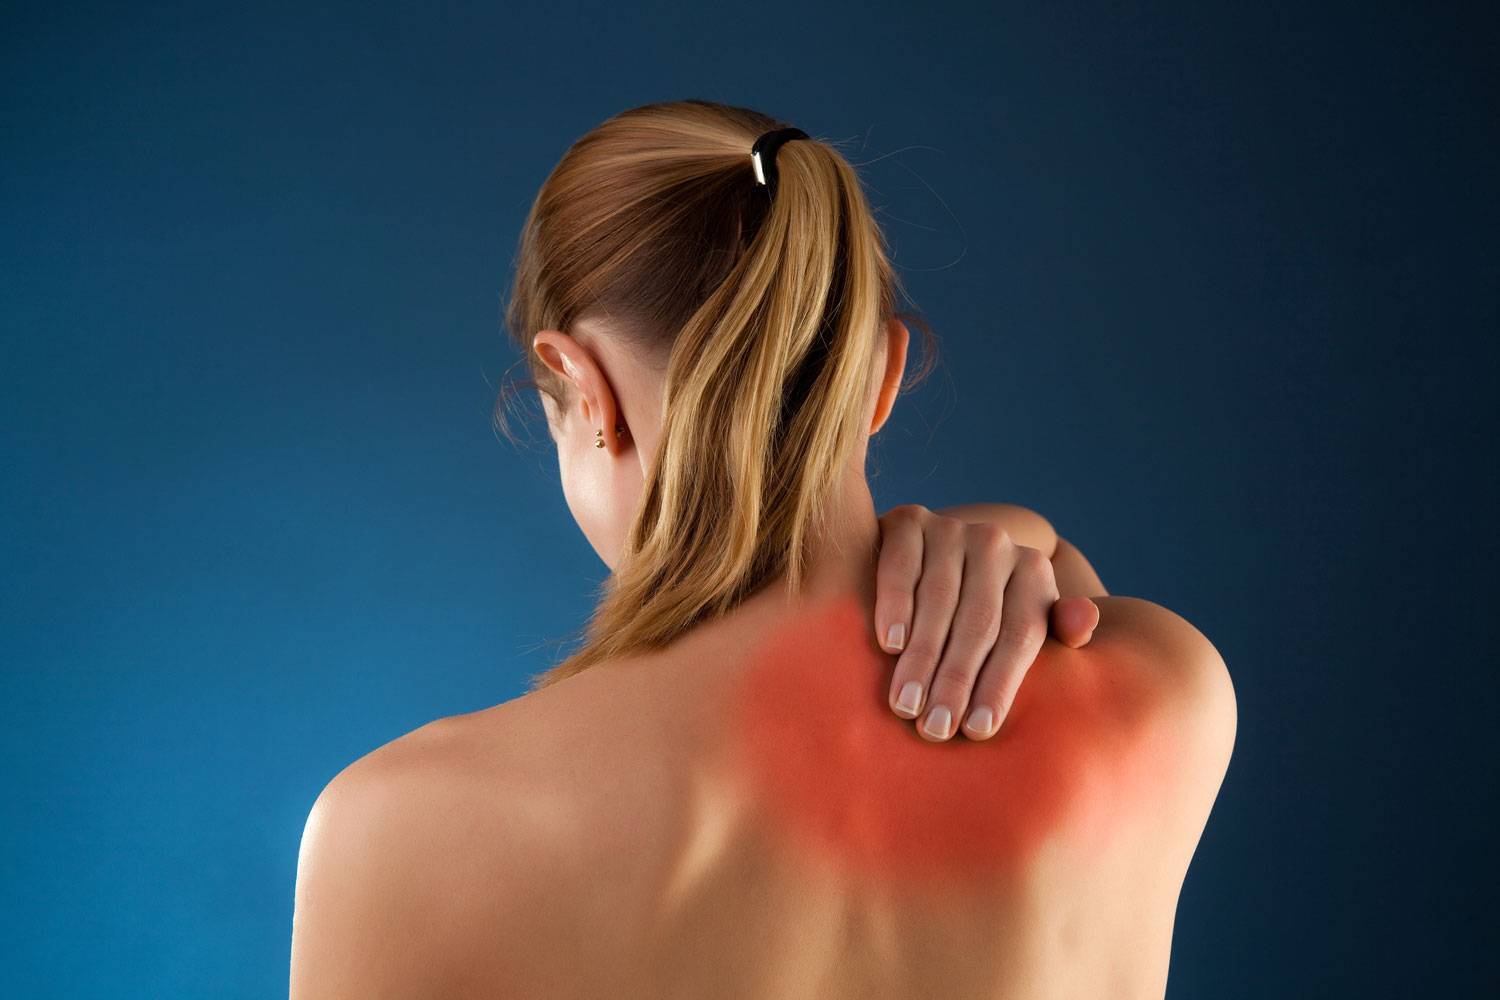 Болят мышцы шеи (сбоку, сзади, с воротниковой зоны): лечение, что делать